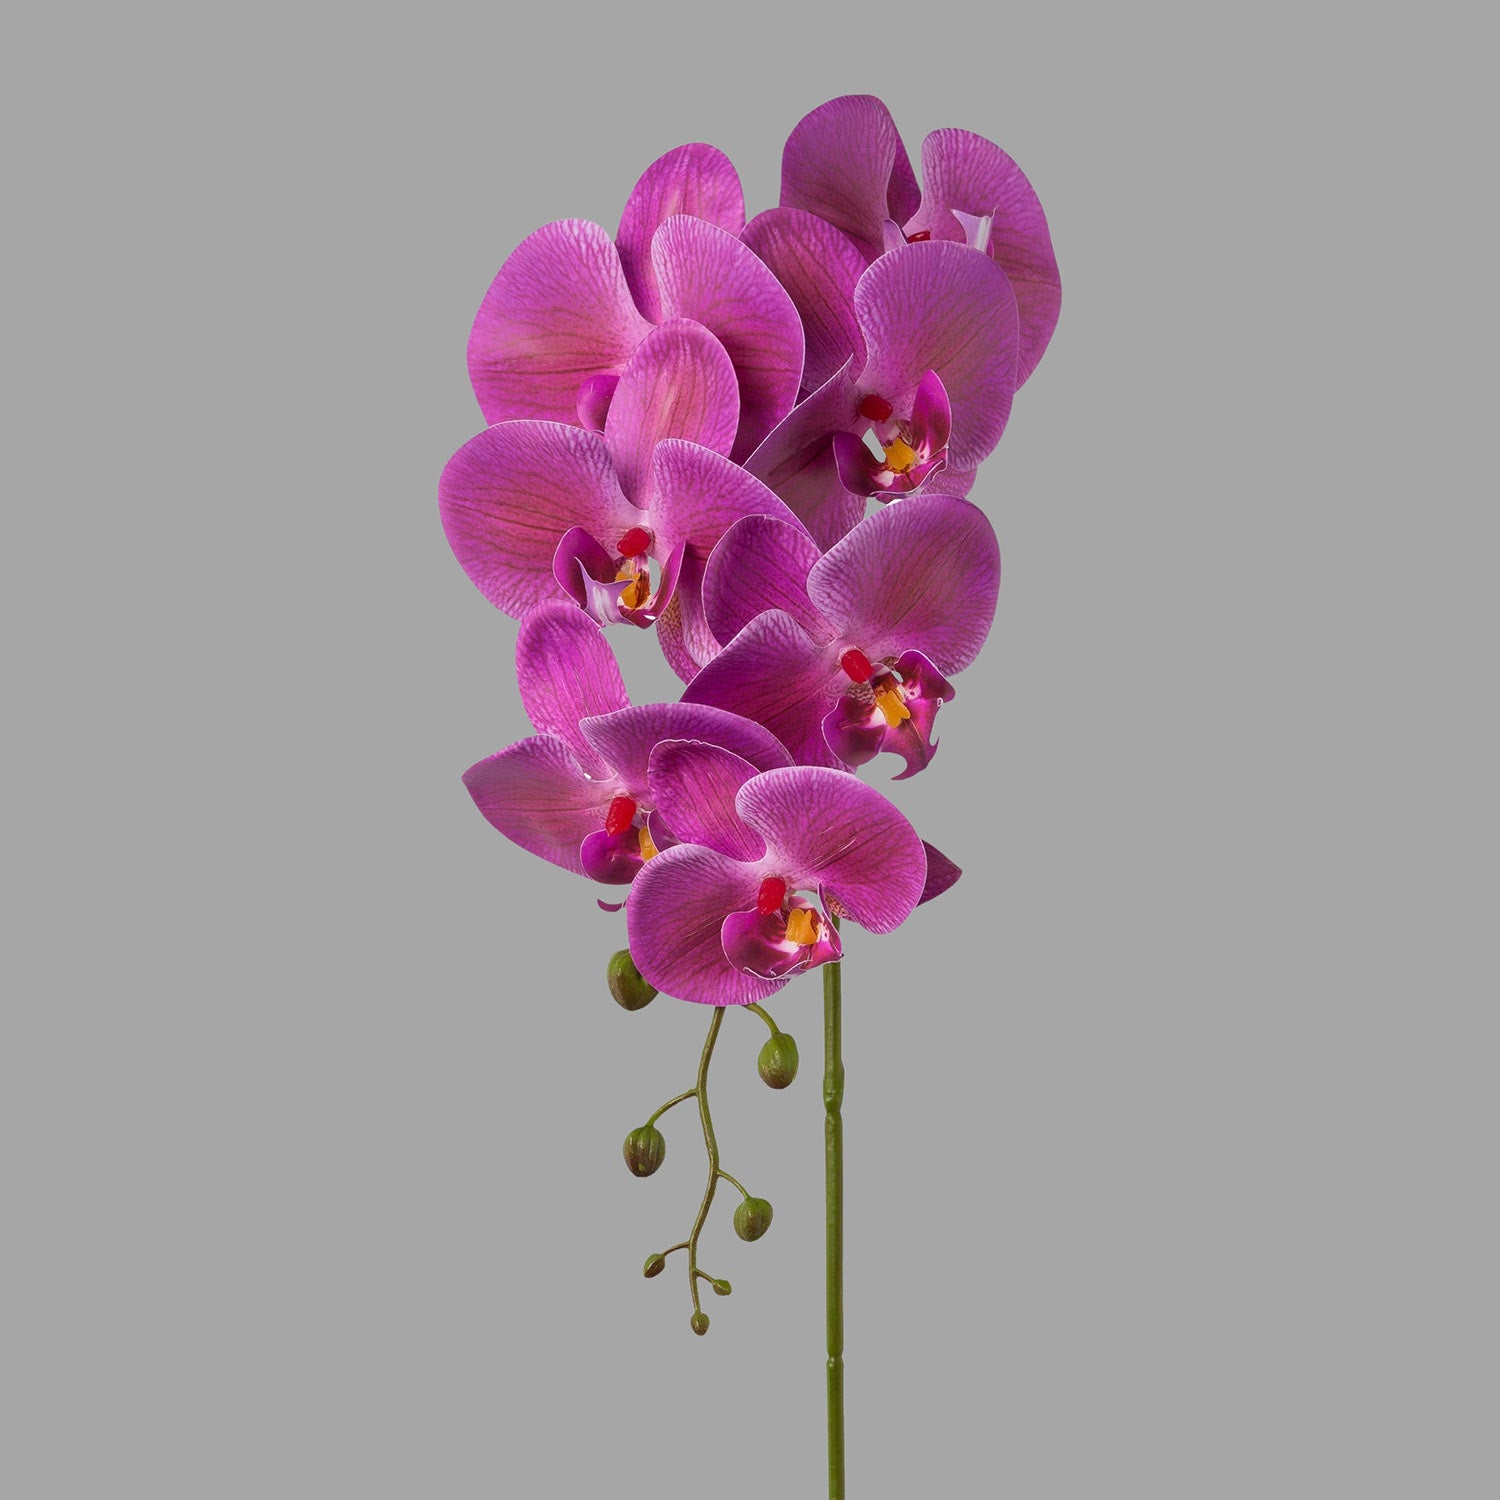 Lila színű, szálas orchidea művirág.